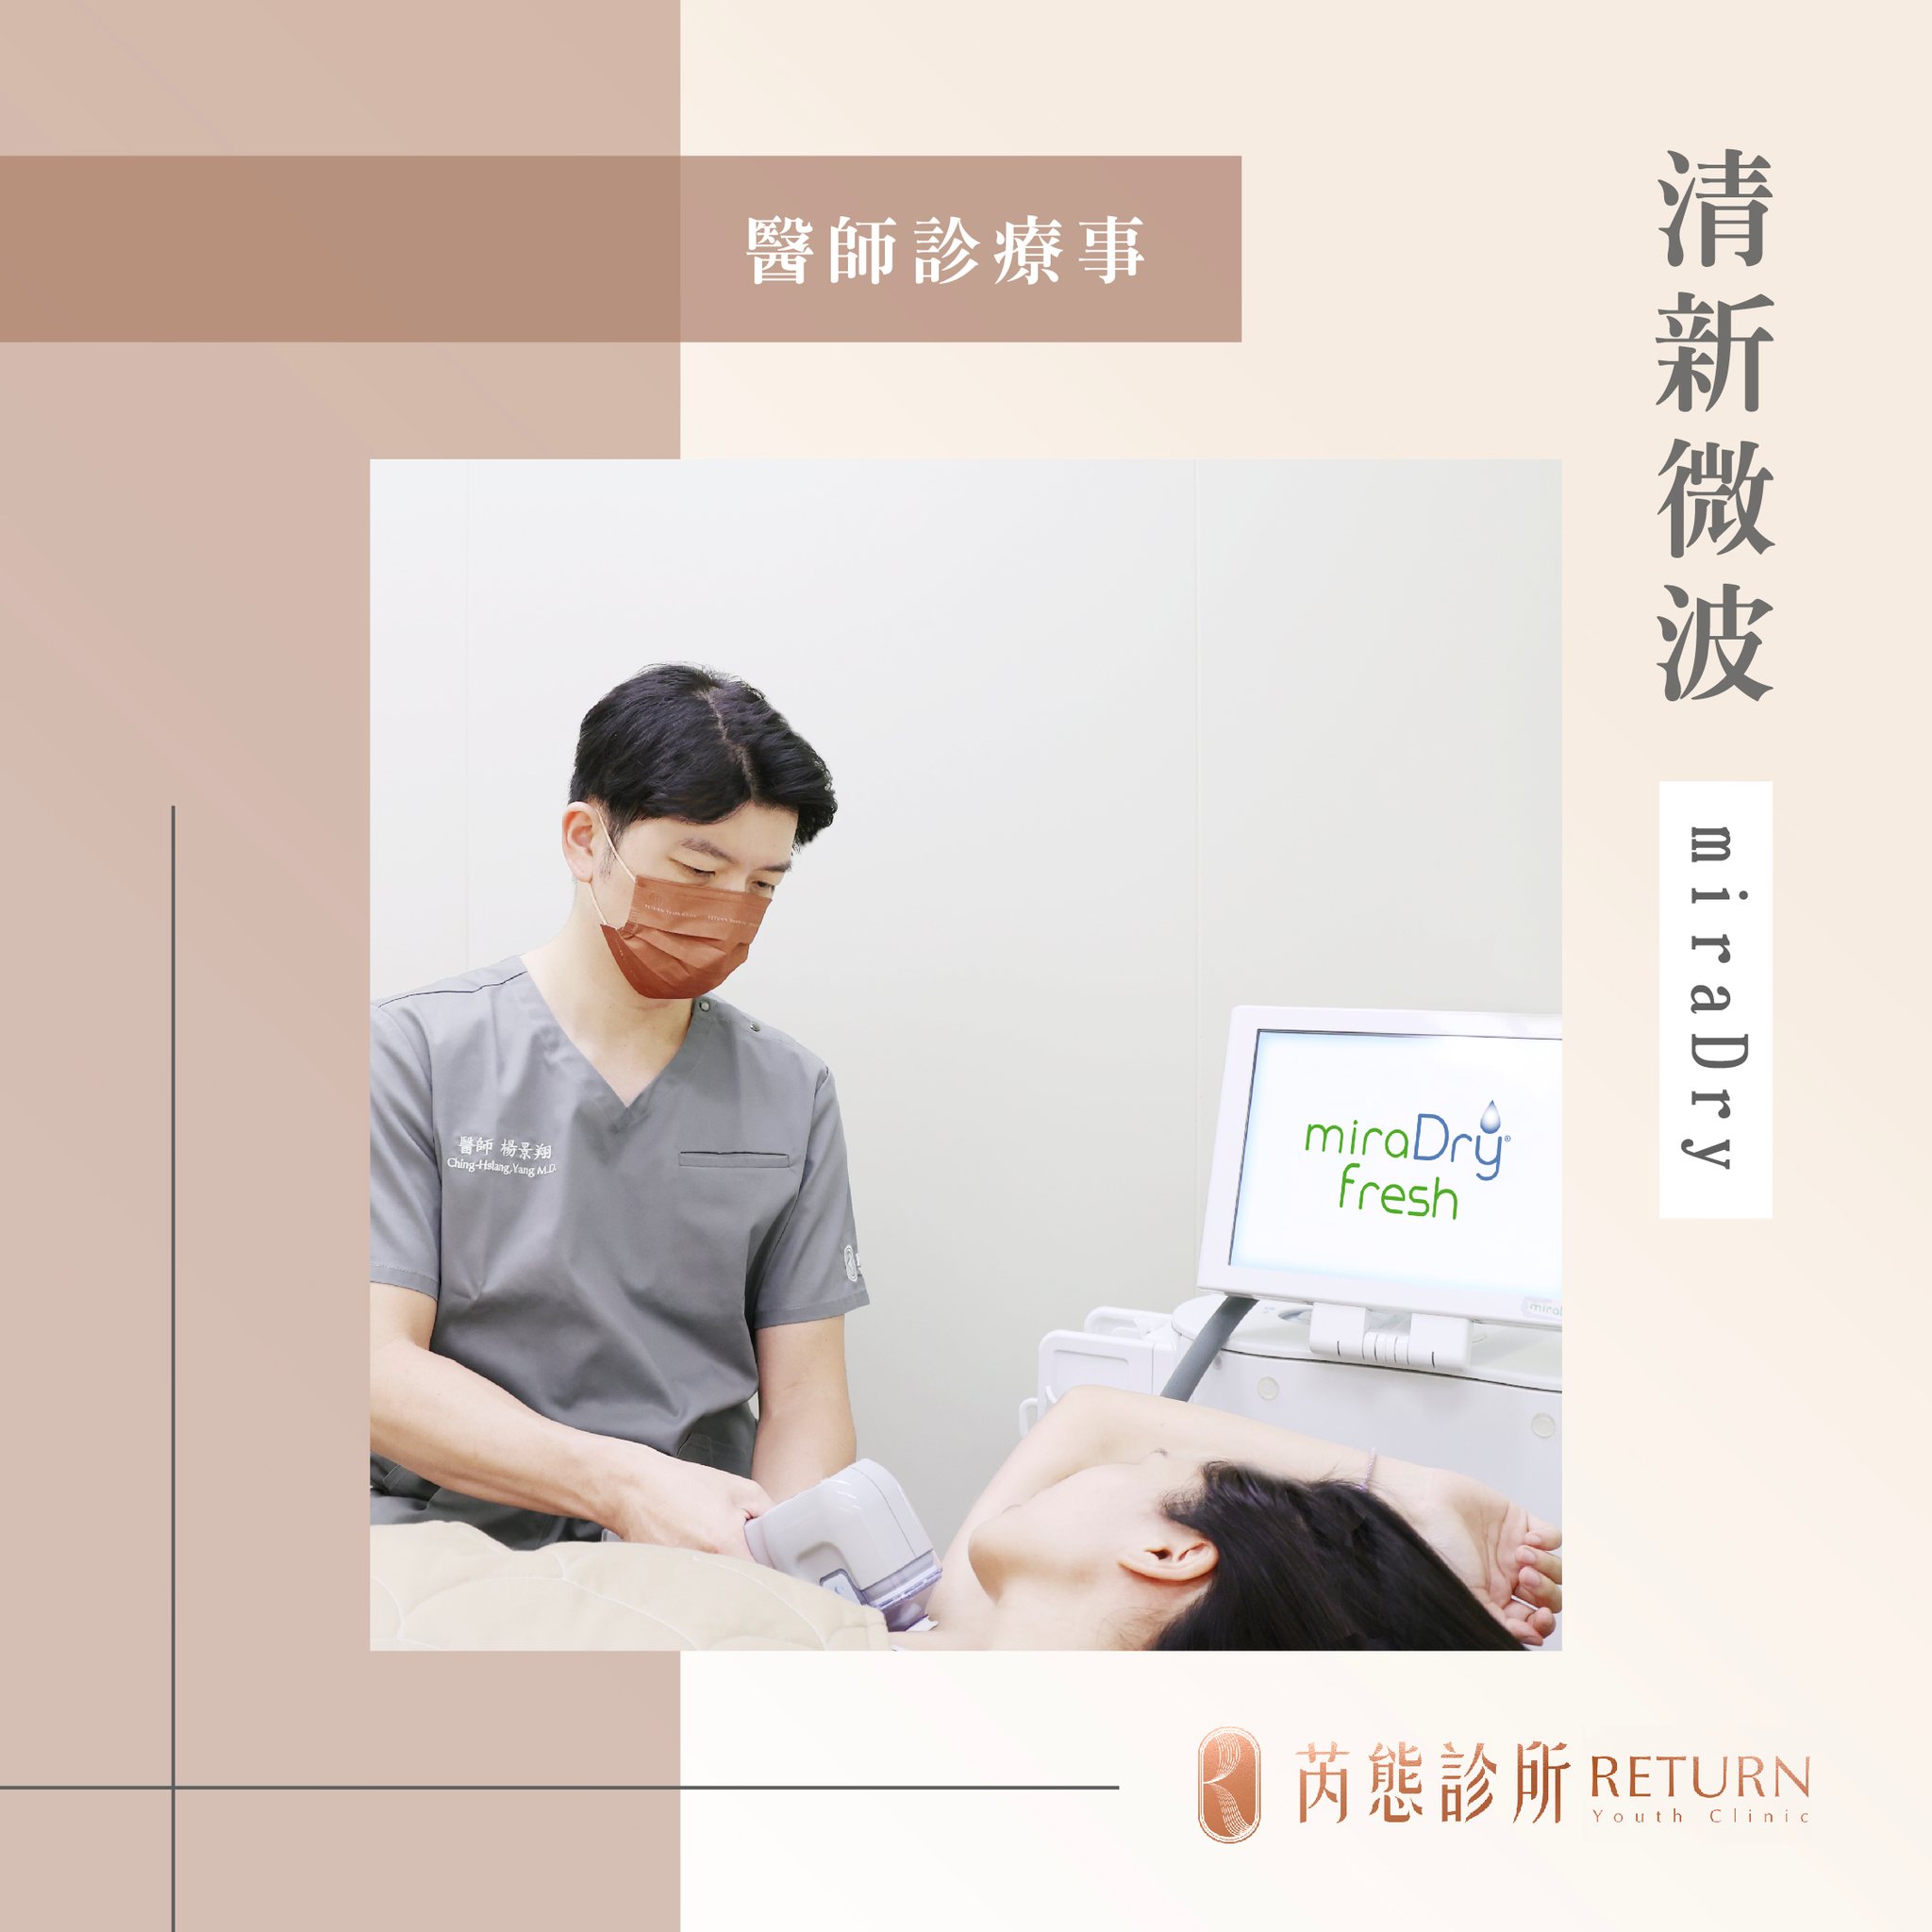 圖為楊景翔醫師施打 miraDry 清新微波熱能止汗術的畫面。